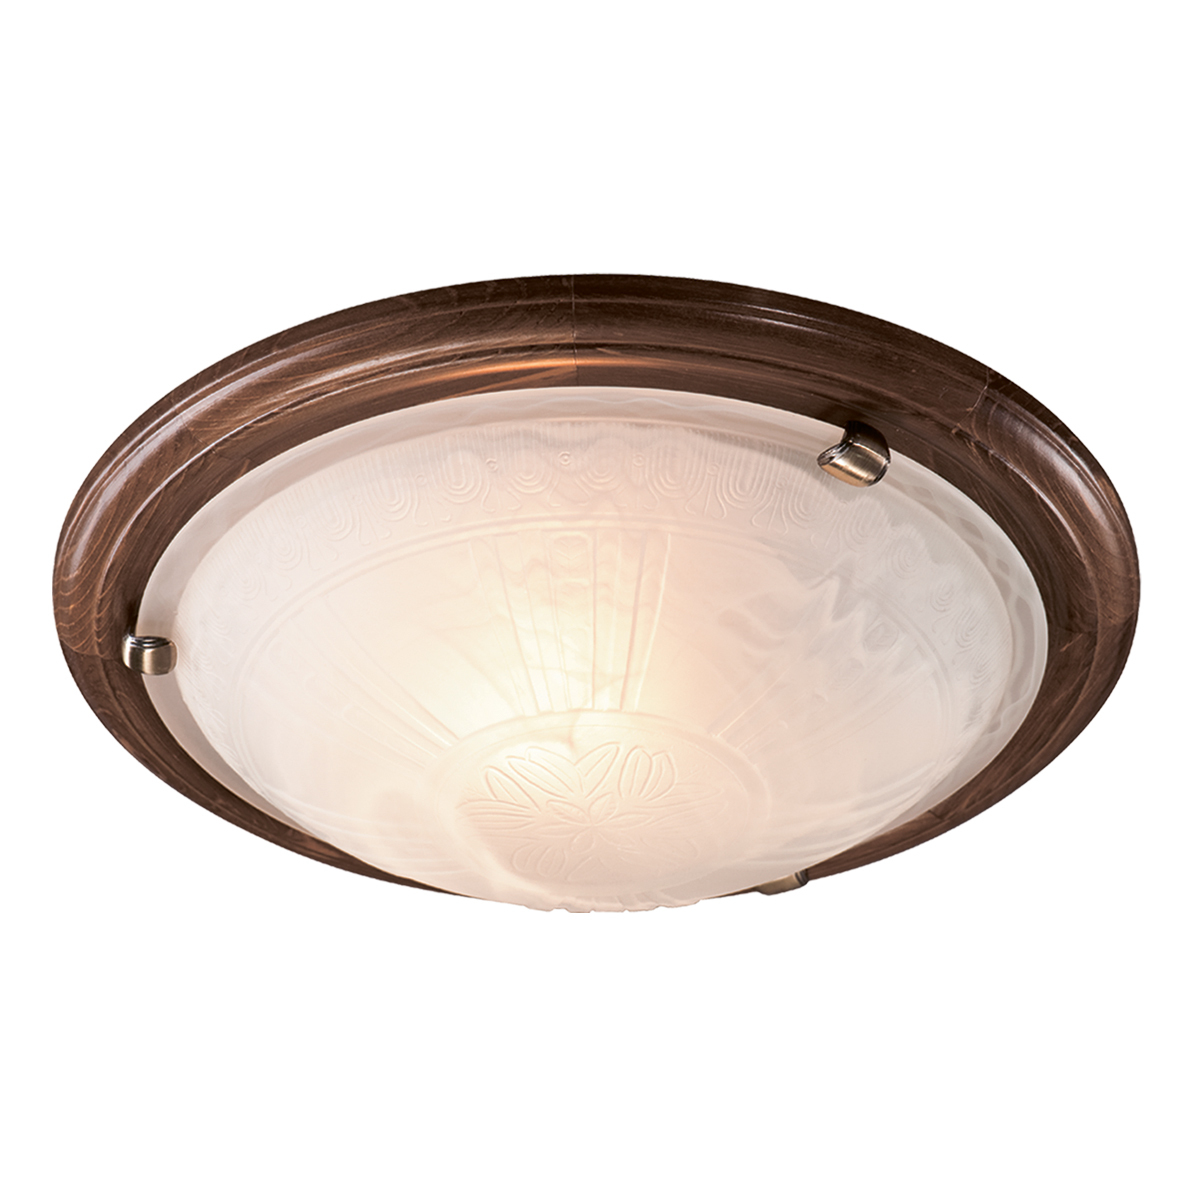 Потолочный светильник Sonex Lufe Wood 136/K, 2xE27x60W, коричневый, белый, дерево, стекло - фото 1